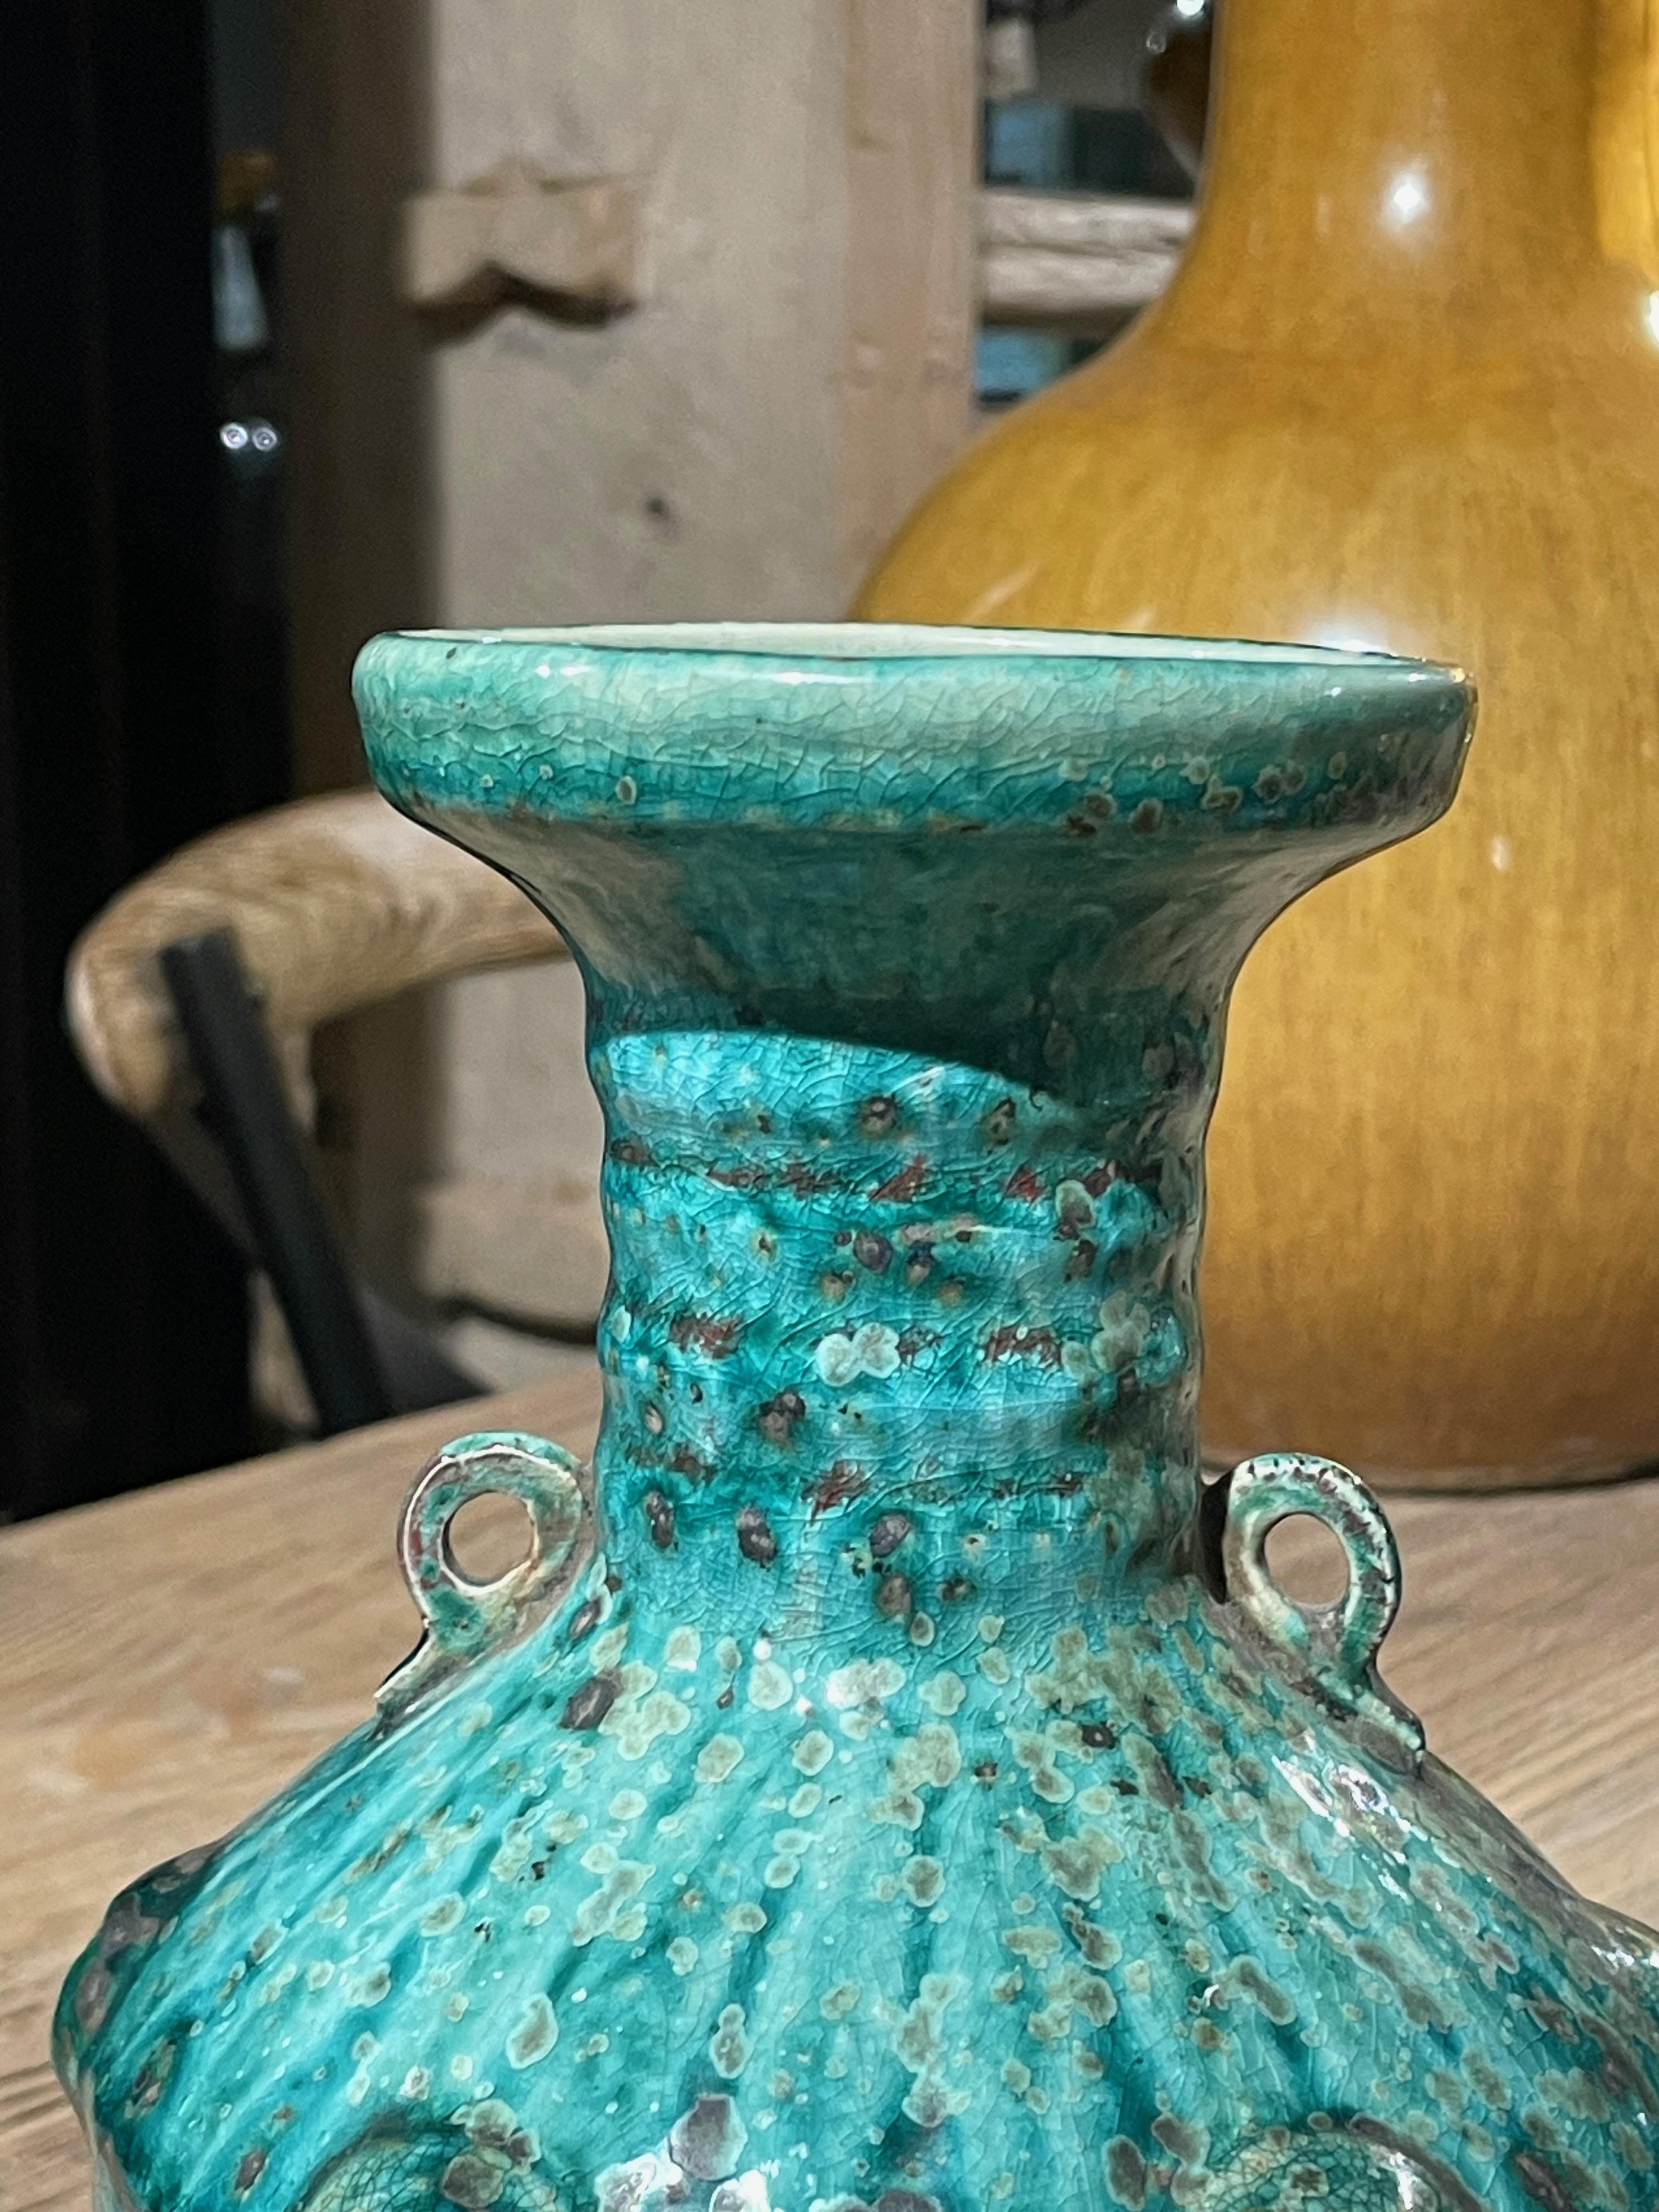 Zeitgenössische chinesische Vase mit gesprenkelter türkiser Färbung und Craquelé-Glasur.
Horizontale Rippenstruktur am Hals der Vase.
Zwei kleine Griffe.
Erhöhtes vertikales Muster, das die Abschnitte der Vase definiert.
Gekräuseltes, strukturiertes